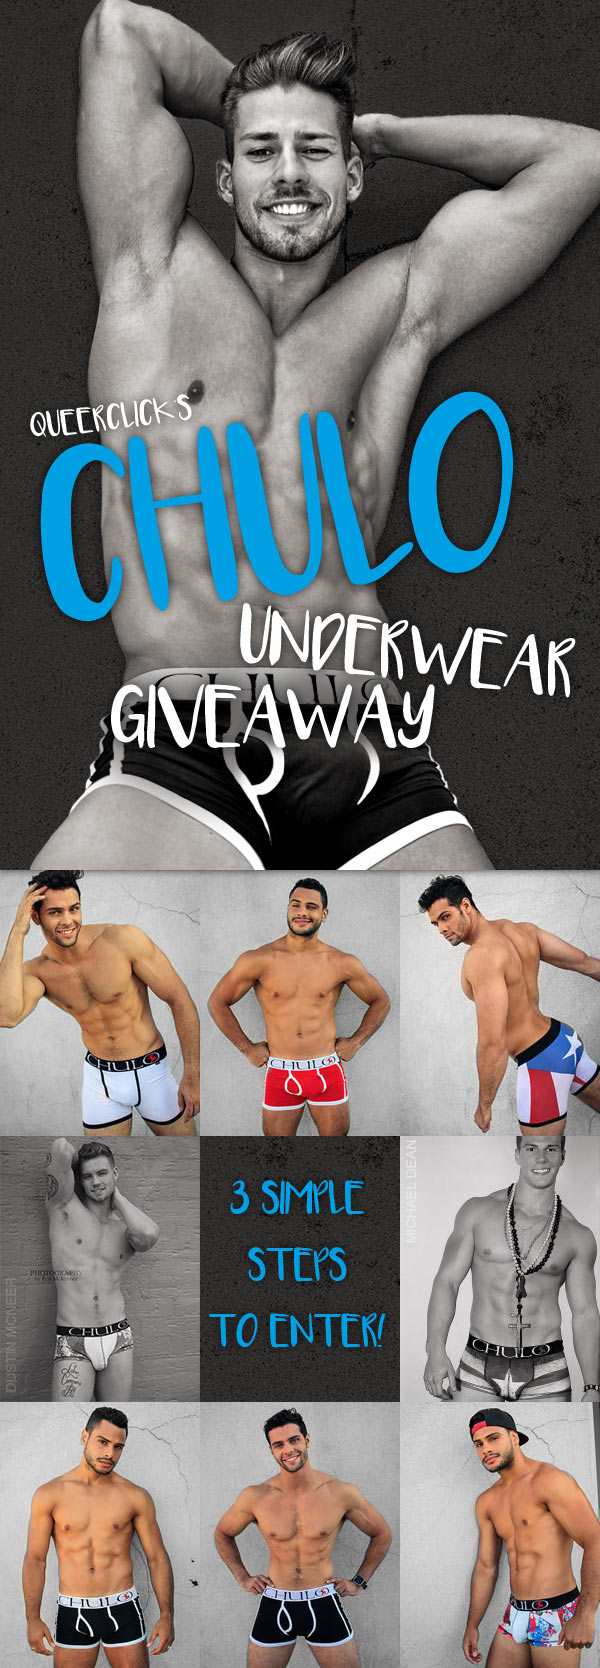 CHULO Underwear Giveaway - Round 1